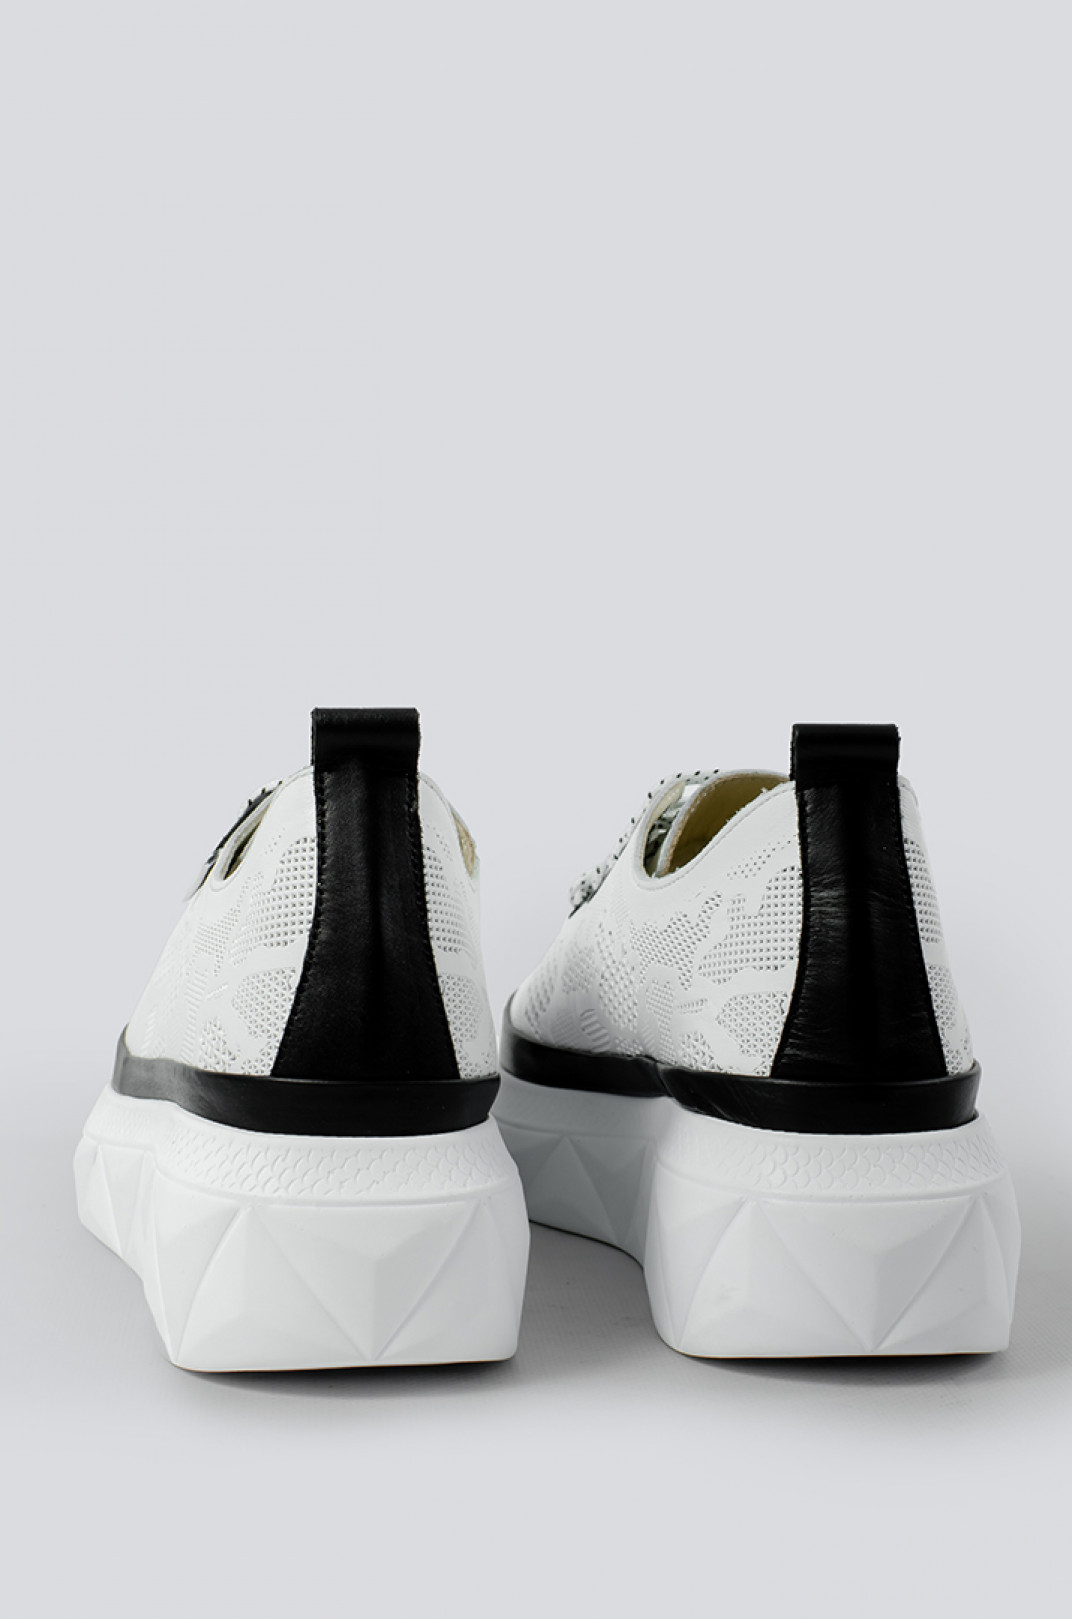 Стильные туфли в бело-черных тонах больших размеров